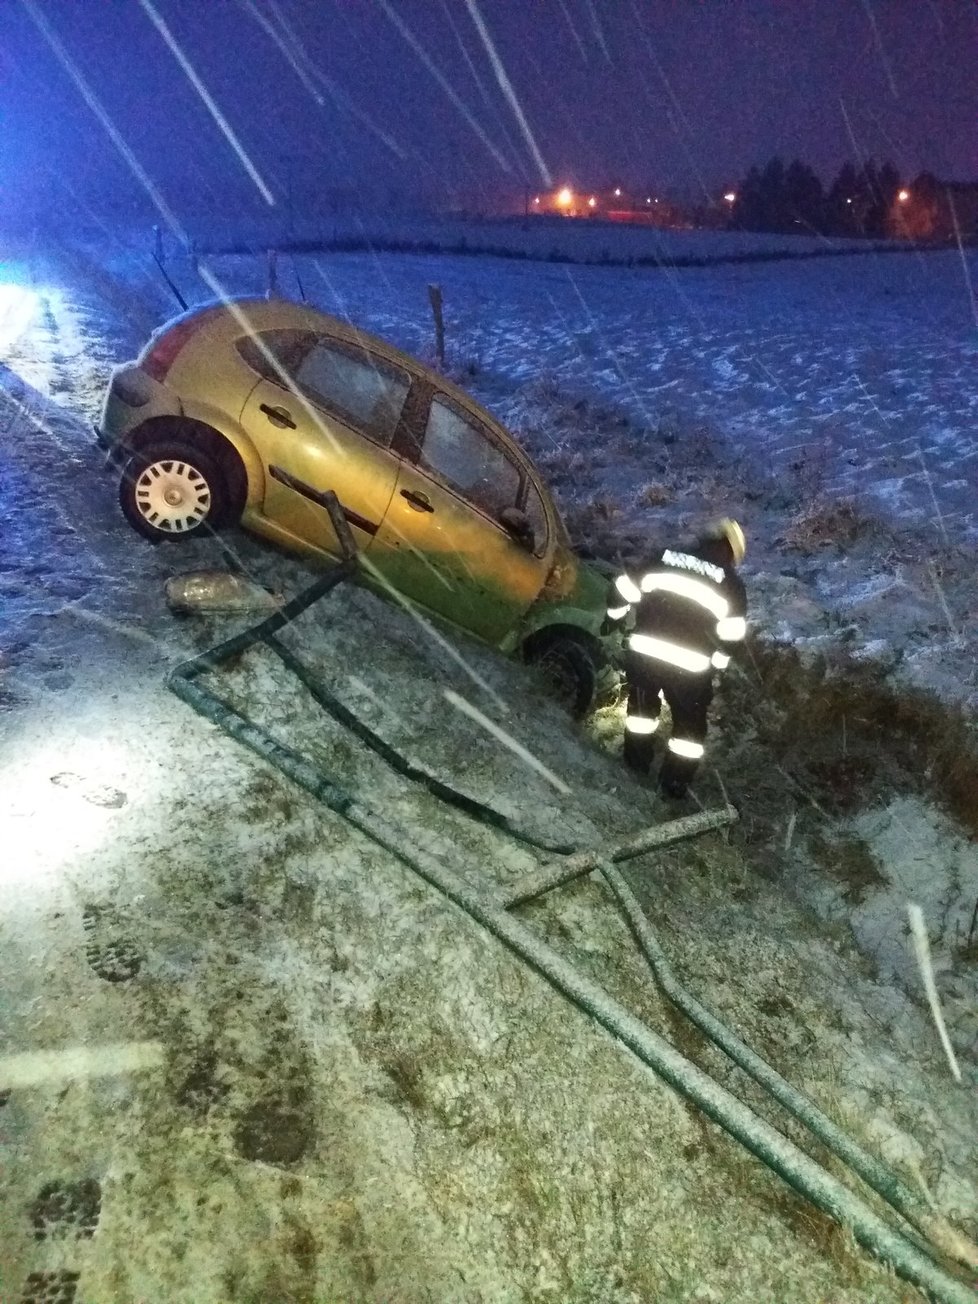 Sníh v Česku: Hasiči Královehradeckého kraje řešili několik dopravních nehod (10.12.2021)